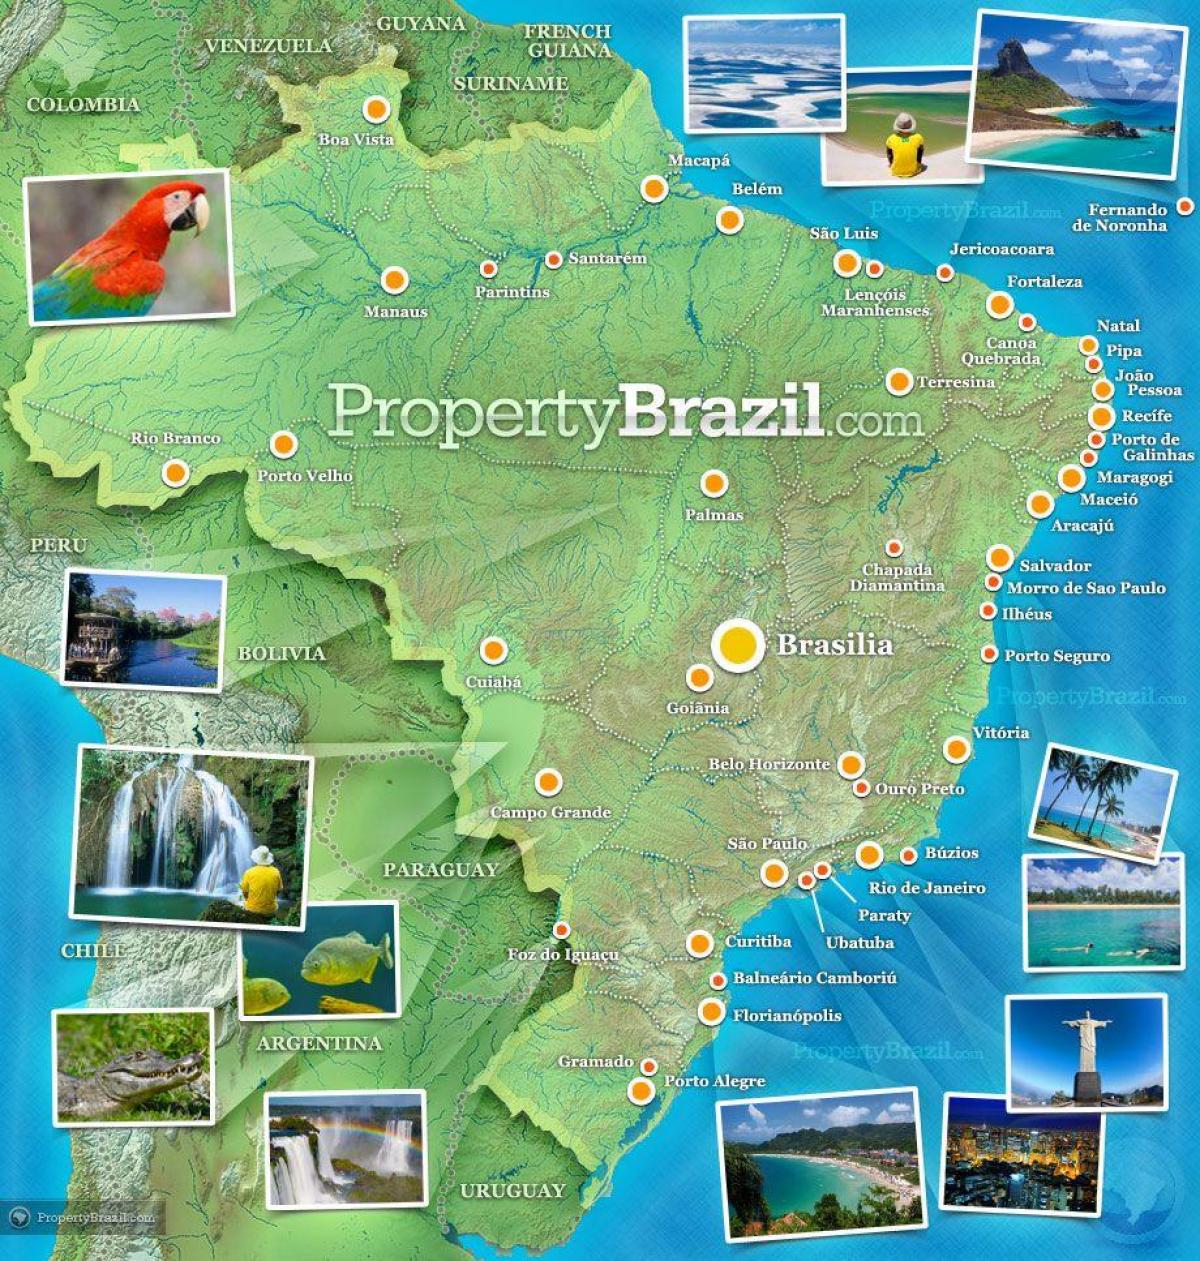 ブラジルの観光マップ 観光マップブラジル 南米 ア